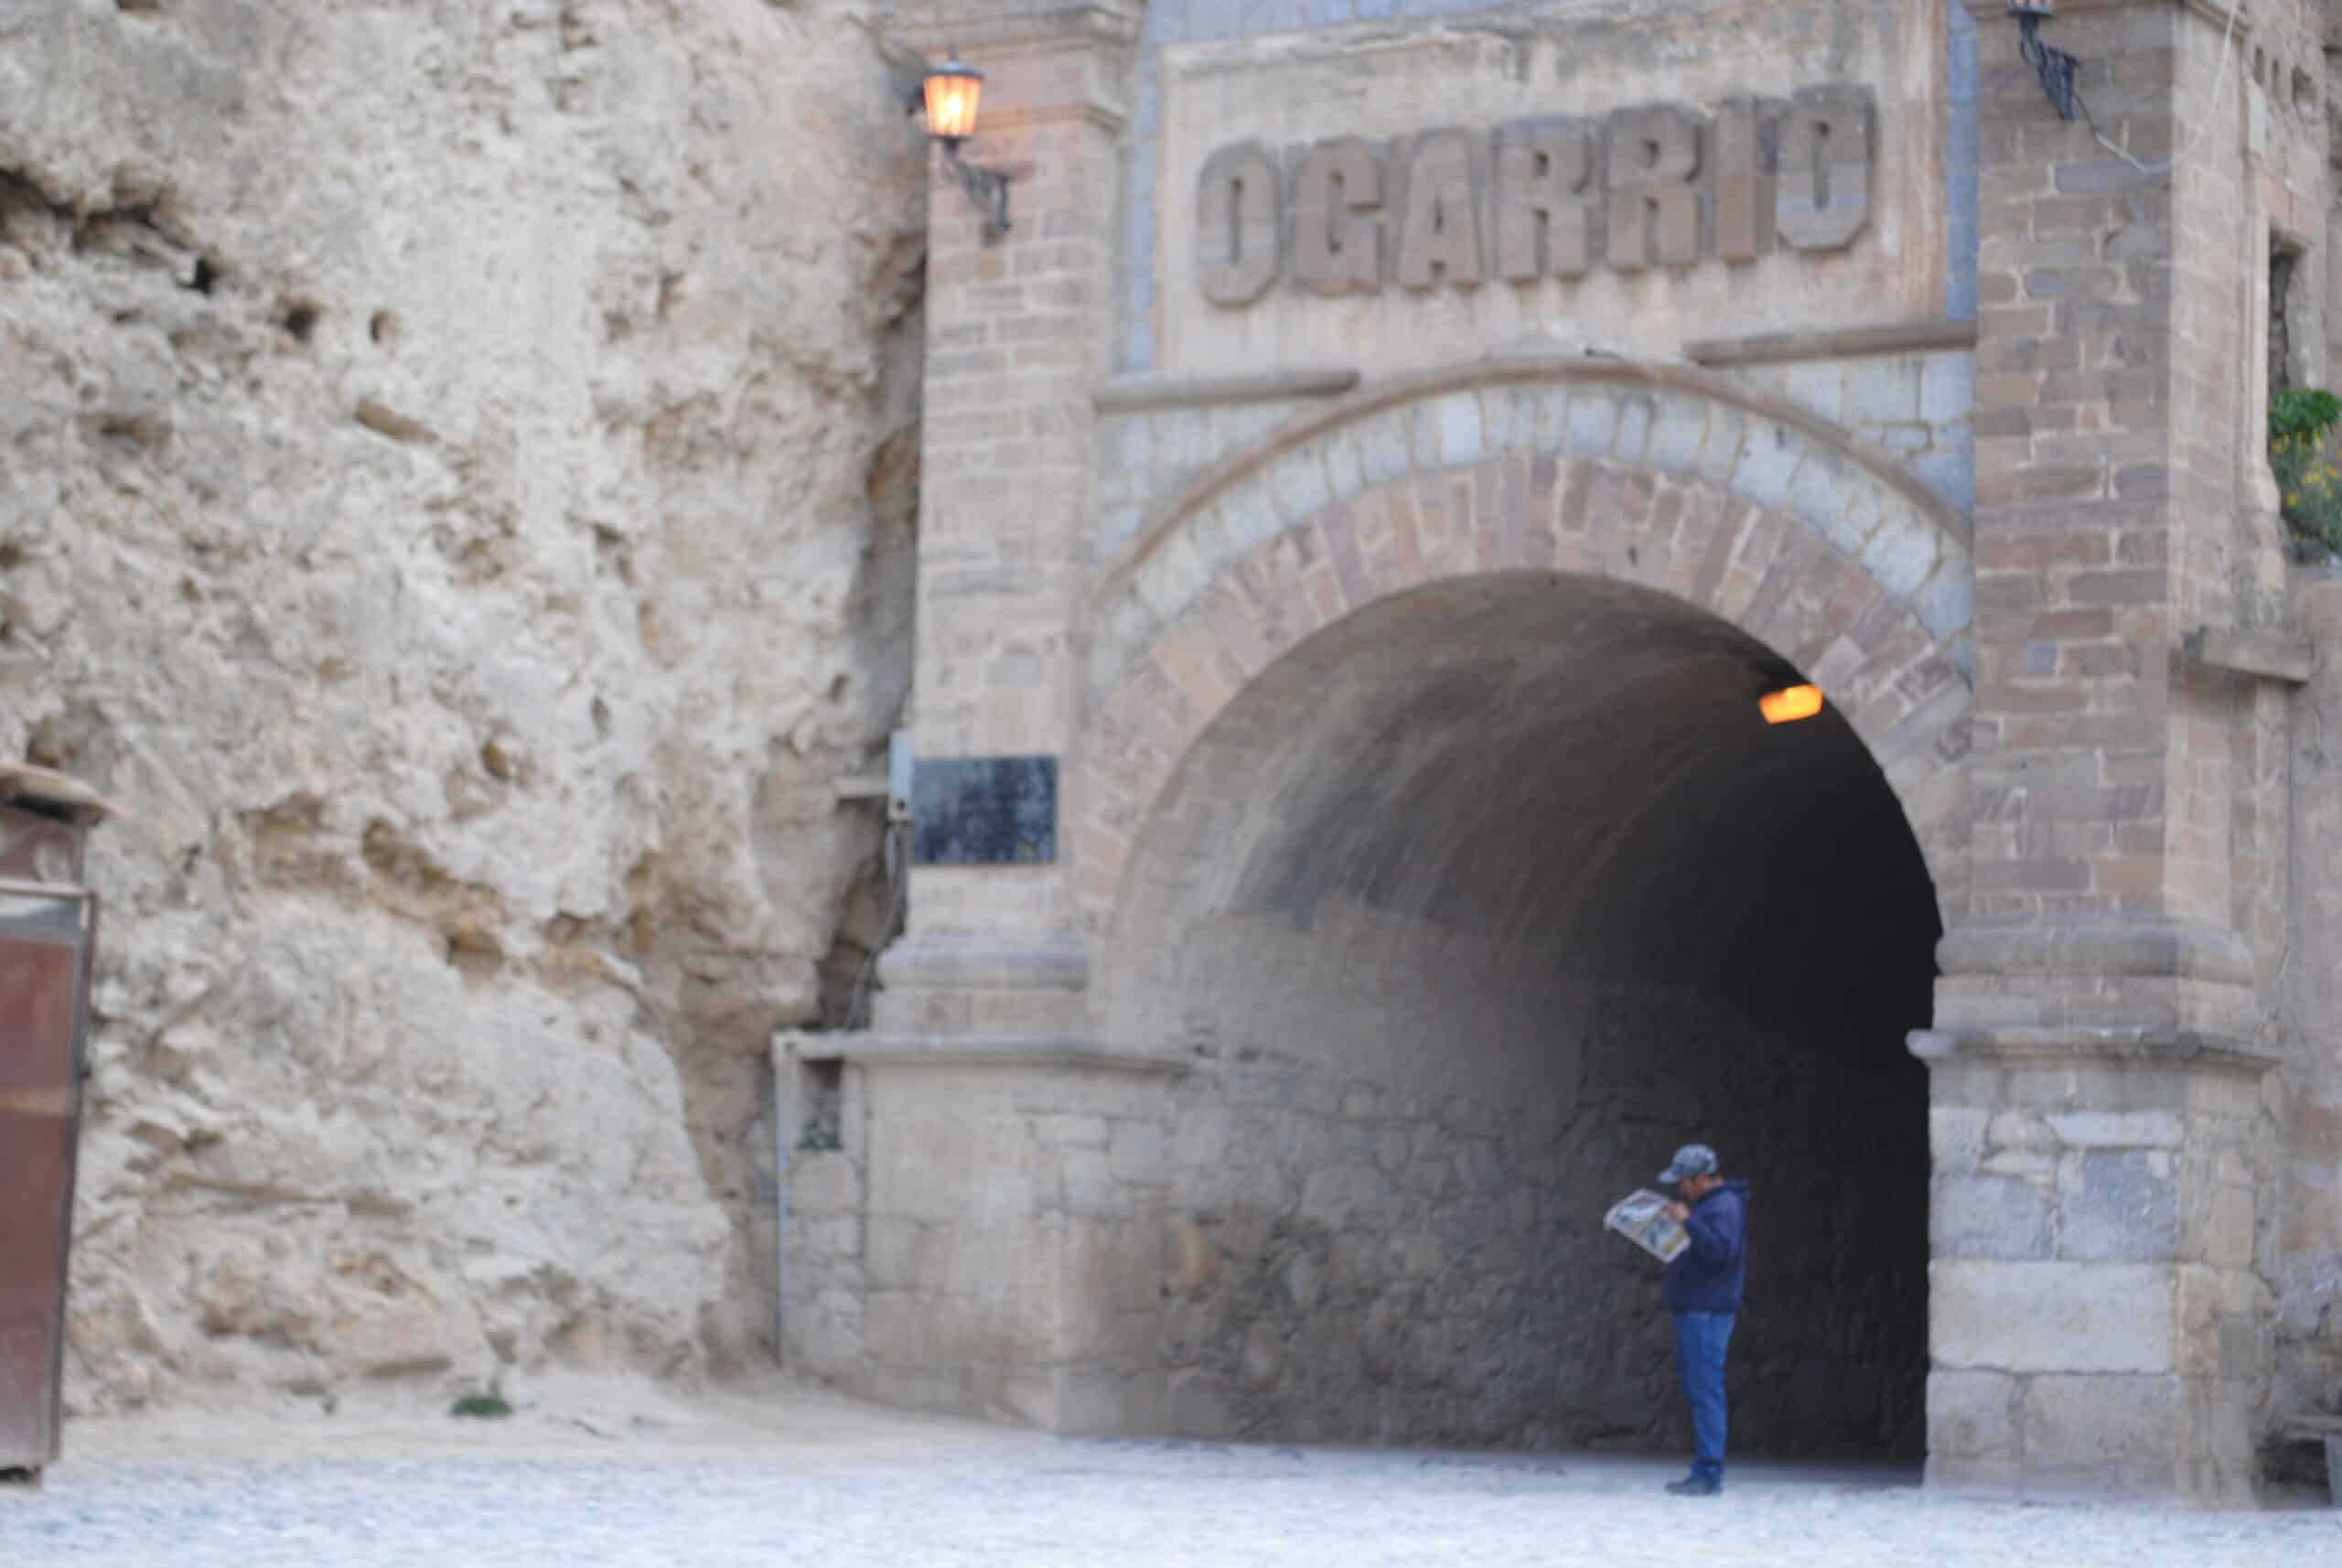 Túnel de Ogarrio en Real de Catorce